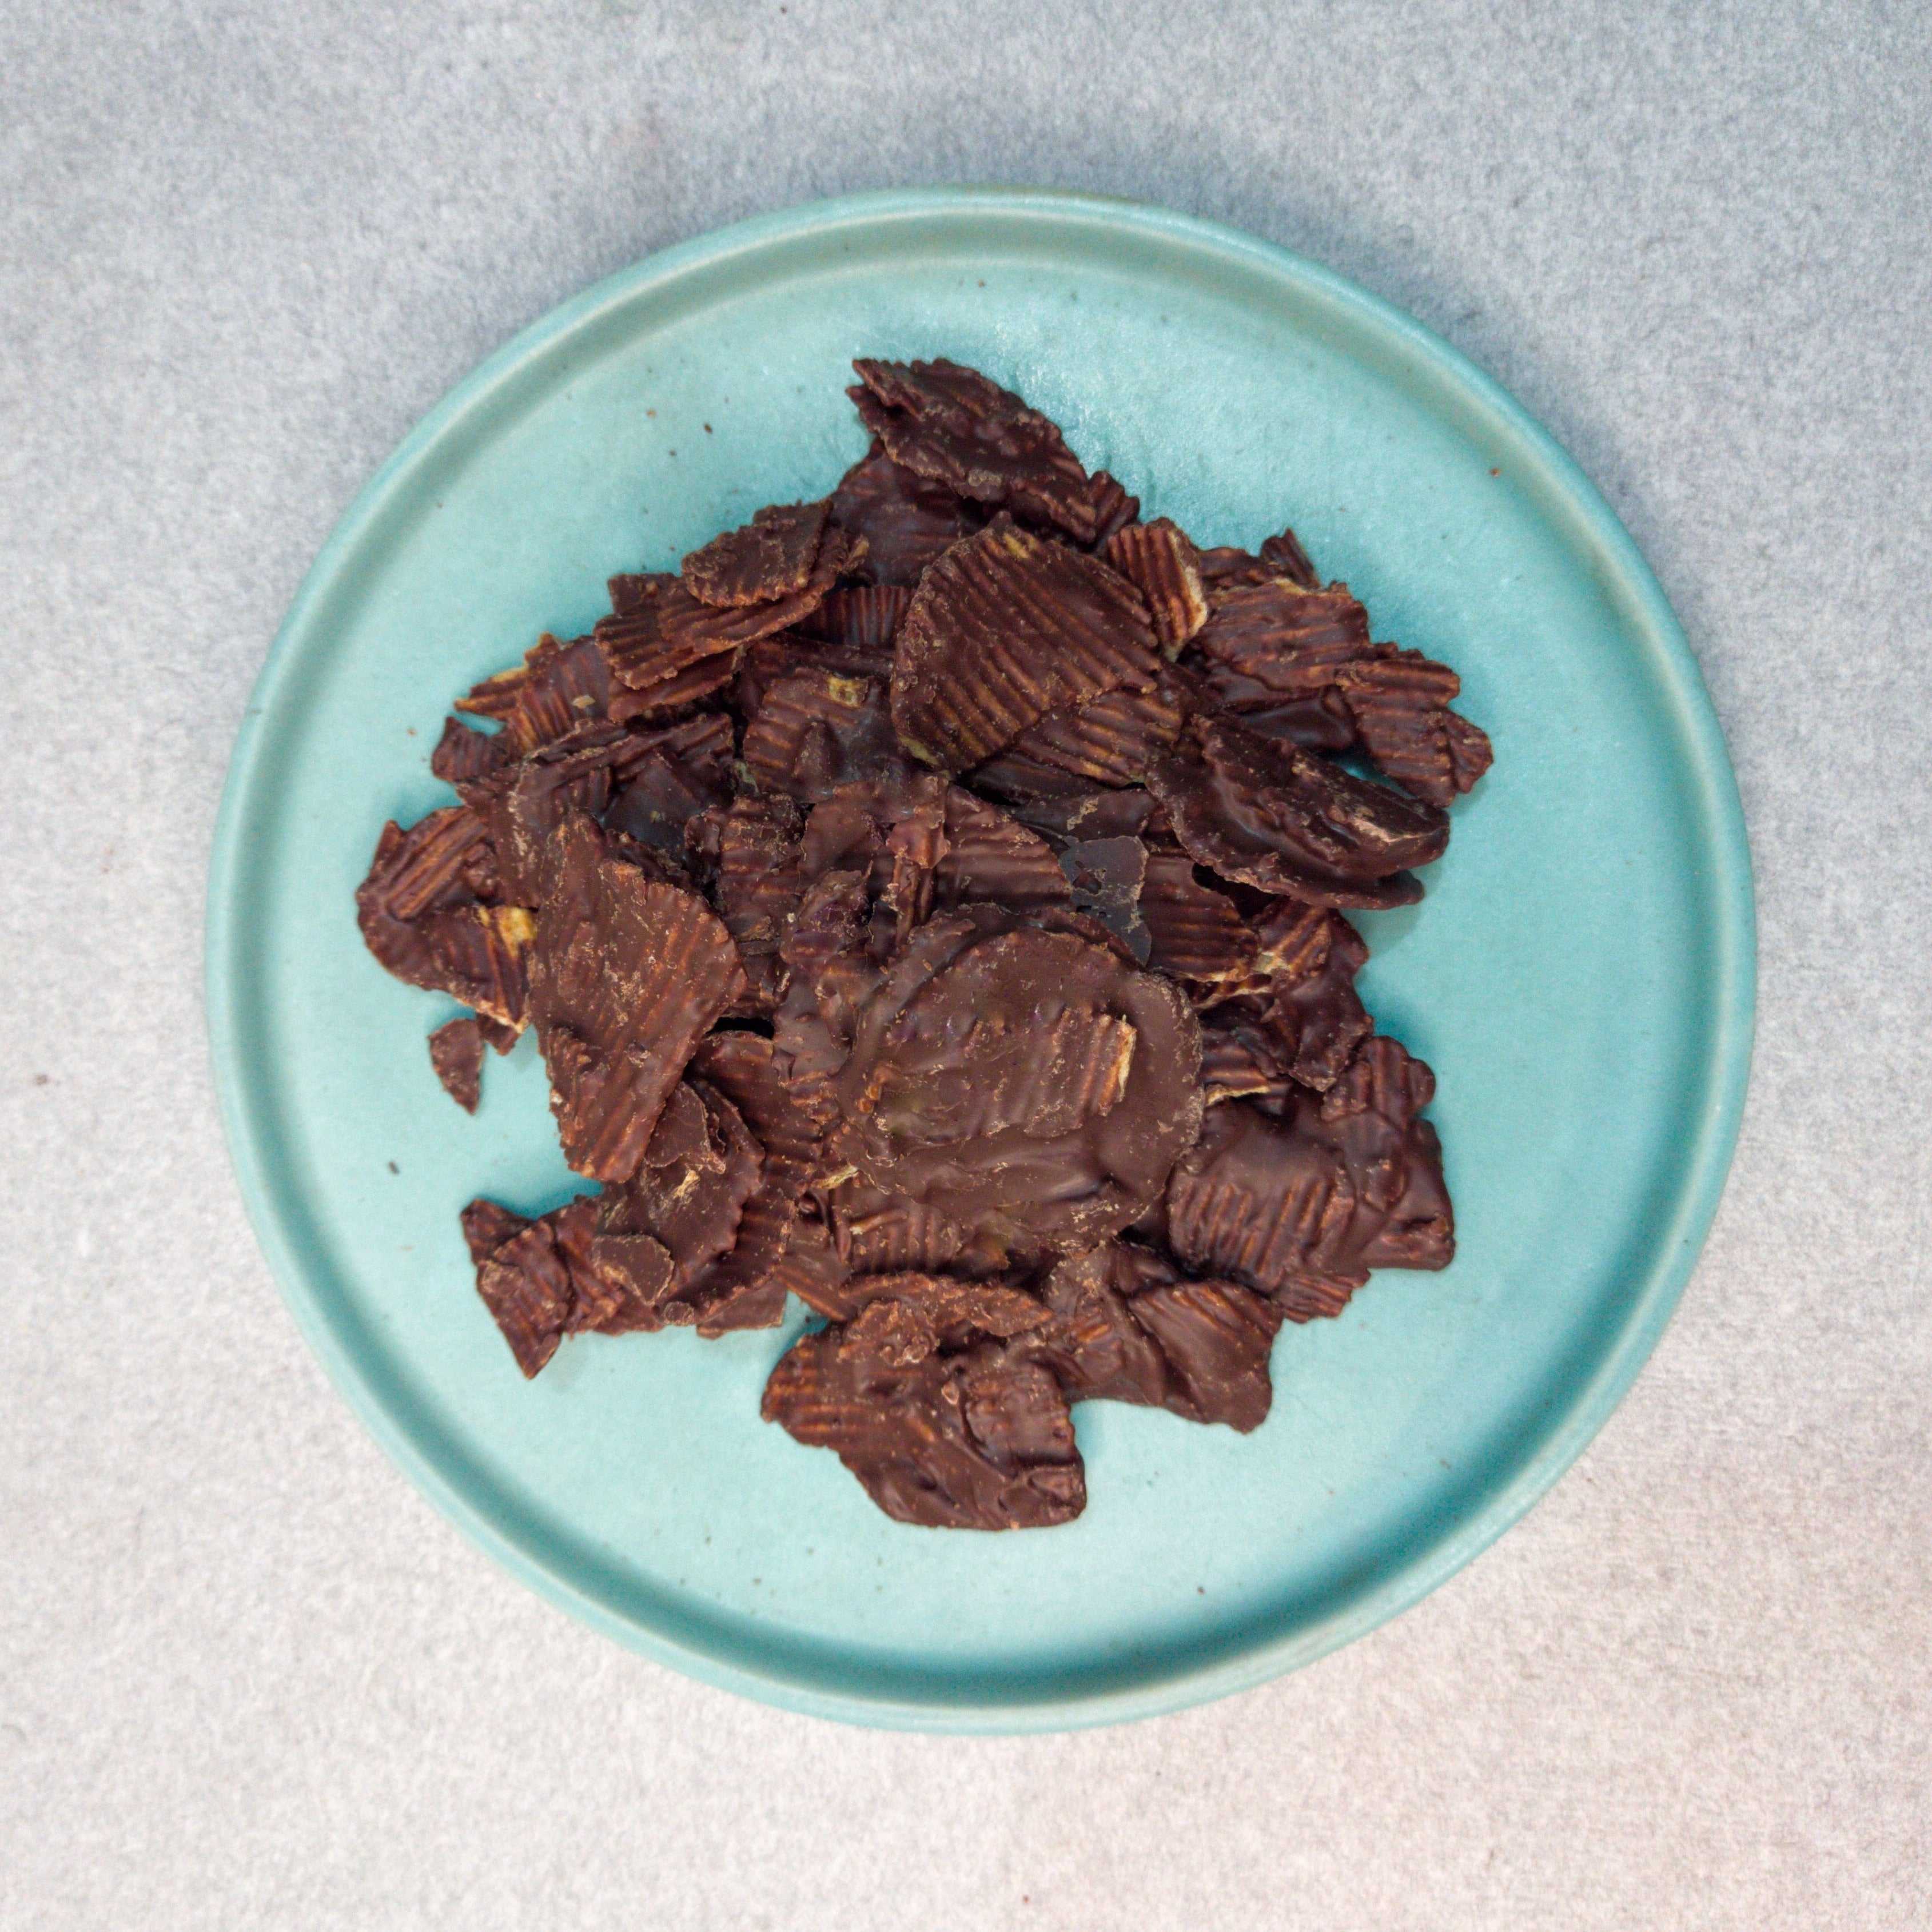 55% Dark Chocolate coated Potato Chips